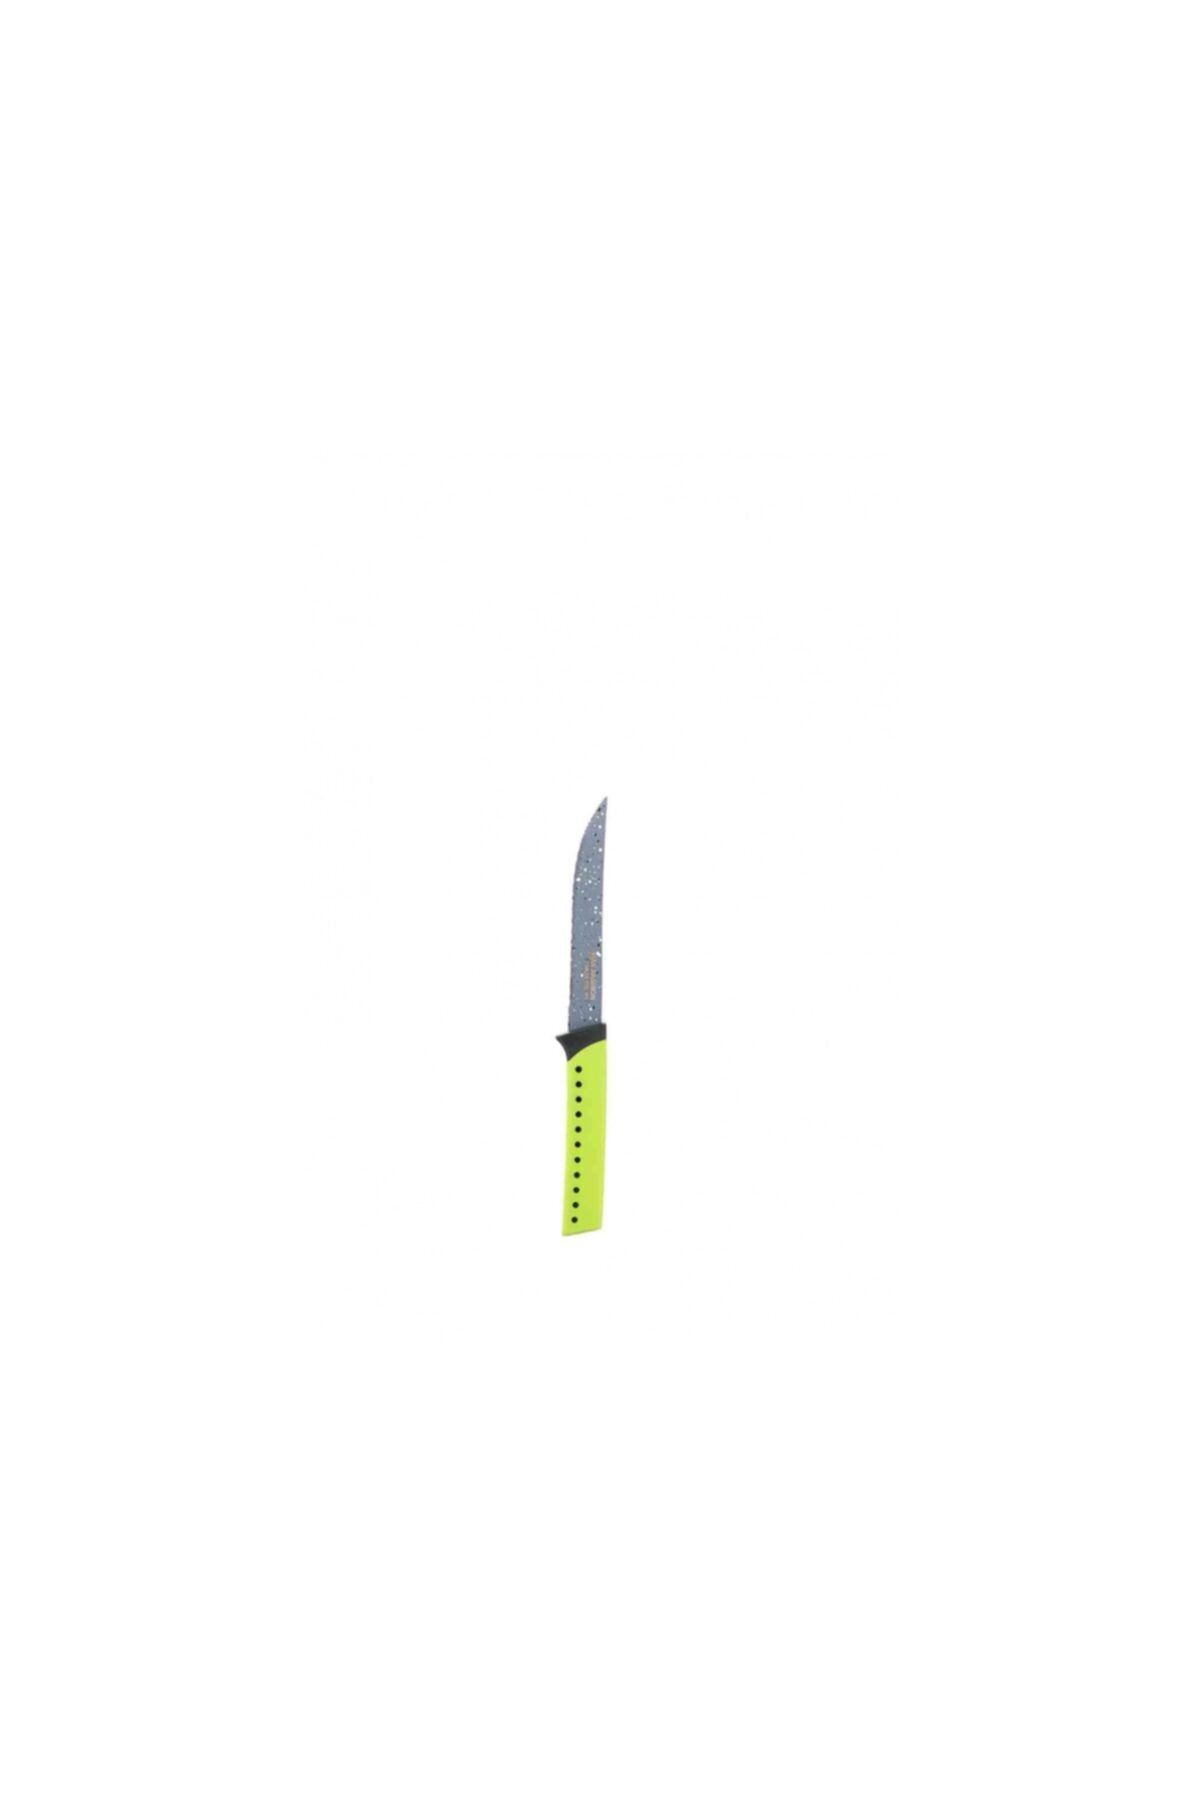 Taç 21 Cm Sebze Bıçağı Fıstık Yeşili